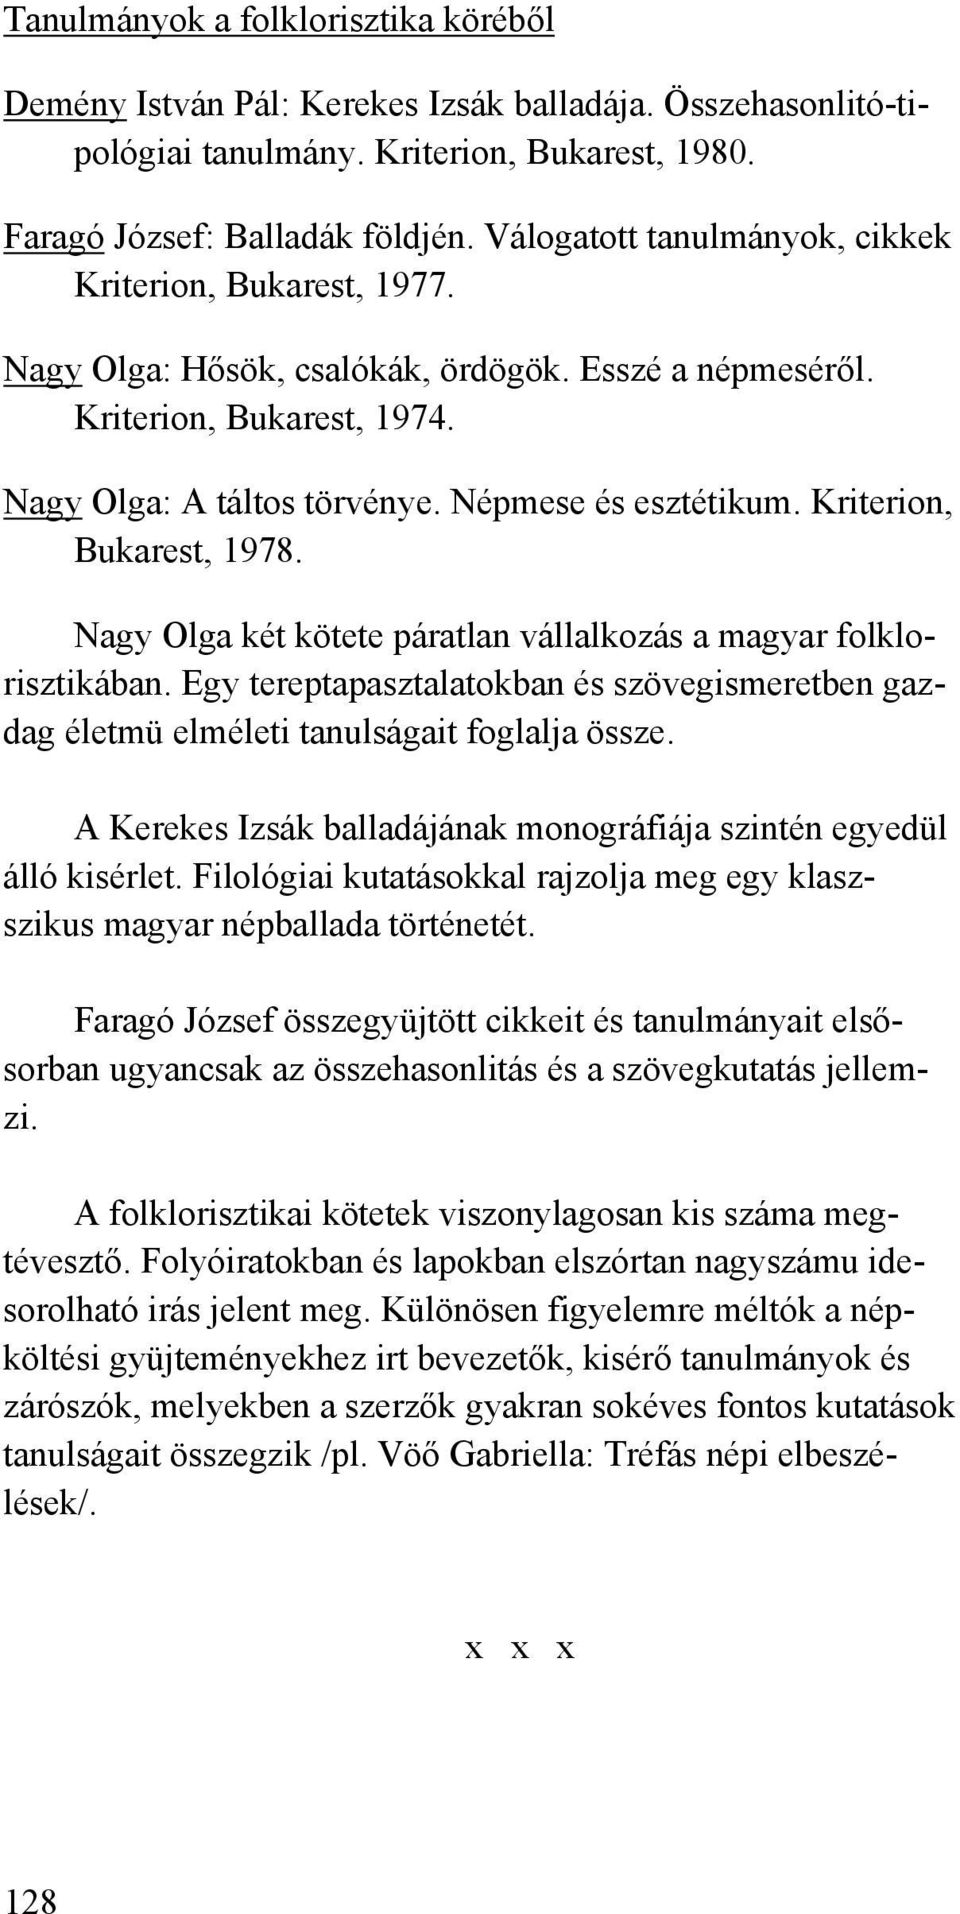 Kriterion, Bukarest, 1978. Nagy Olga két kötete páratlan vállalkozás a magyar folklorisztikában. Egy tereptapasztalatokban és szövegismeretben gazdag életmü elméleti tanulságait foglalja össze.